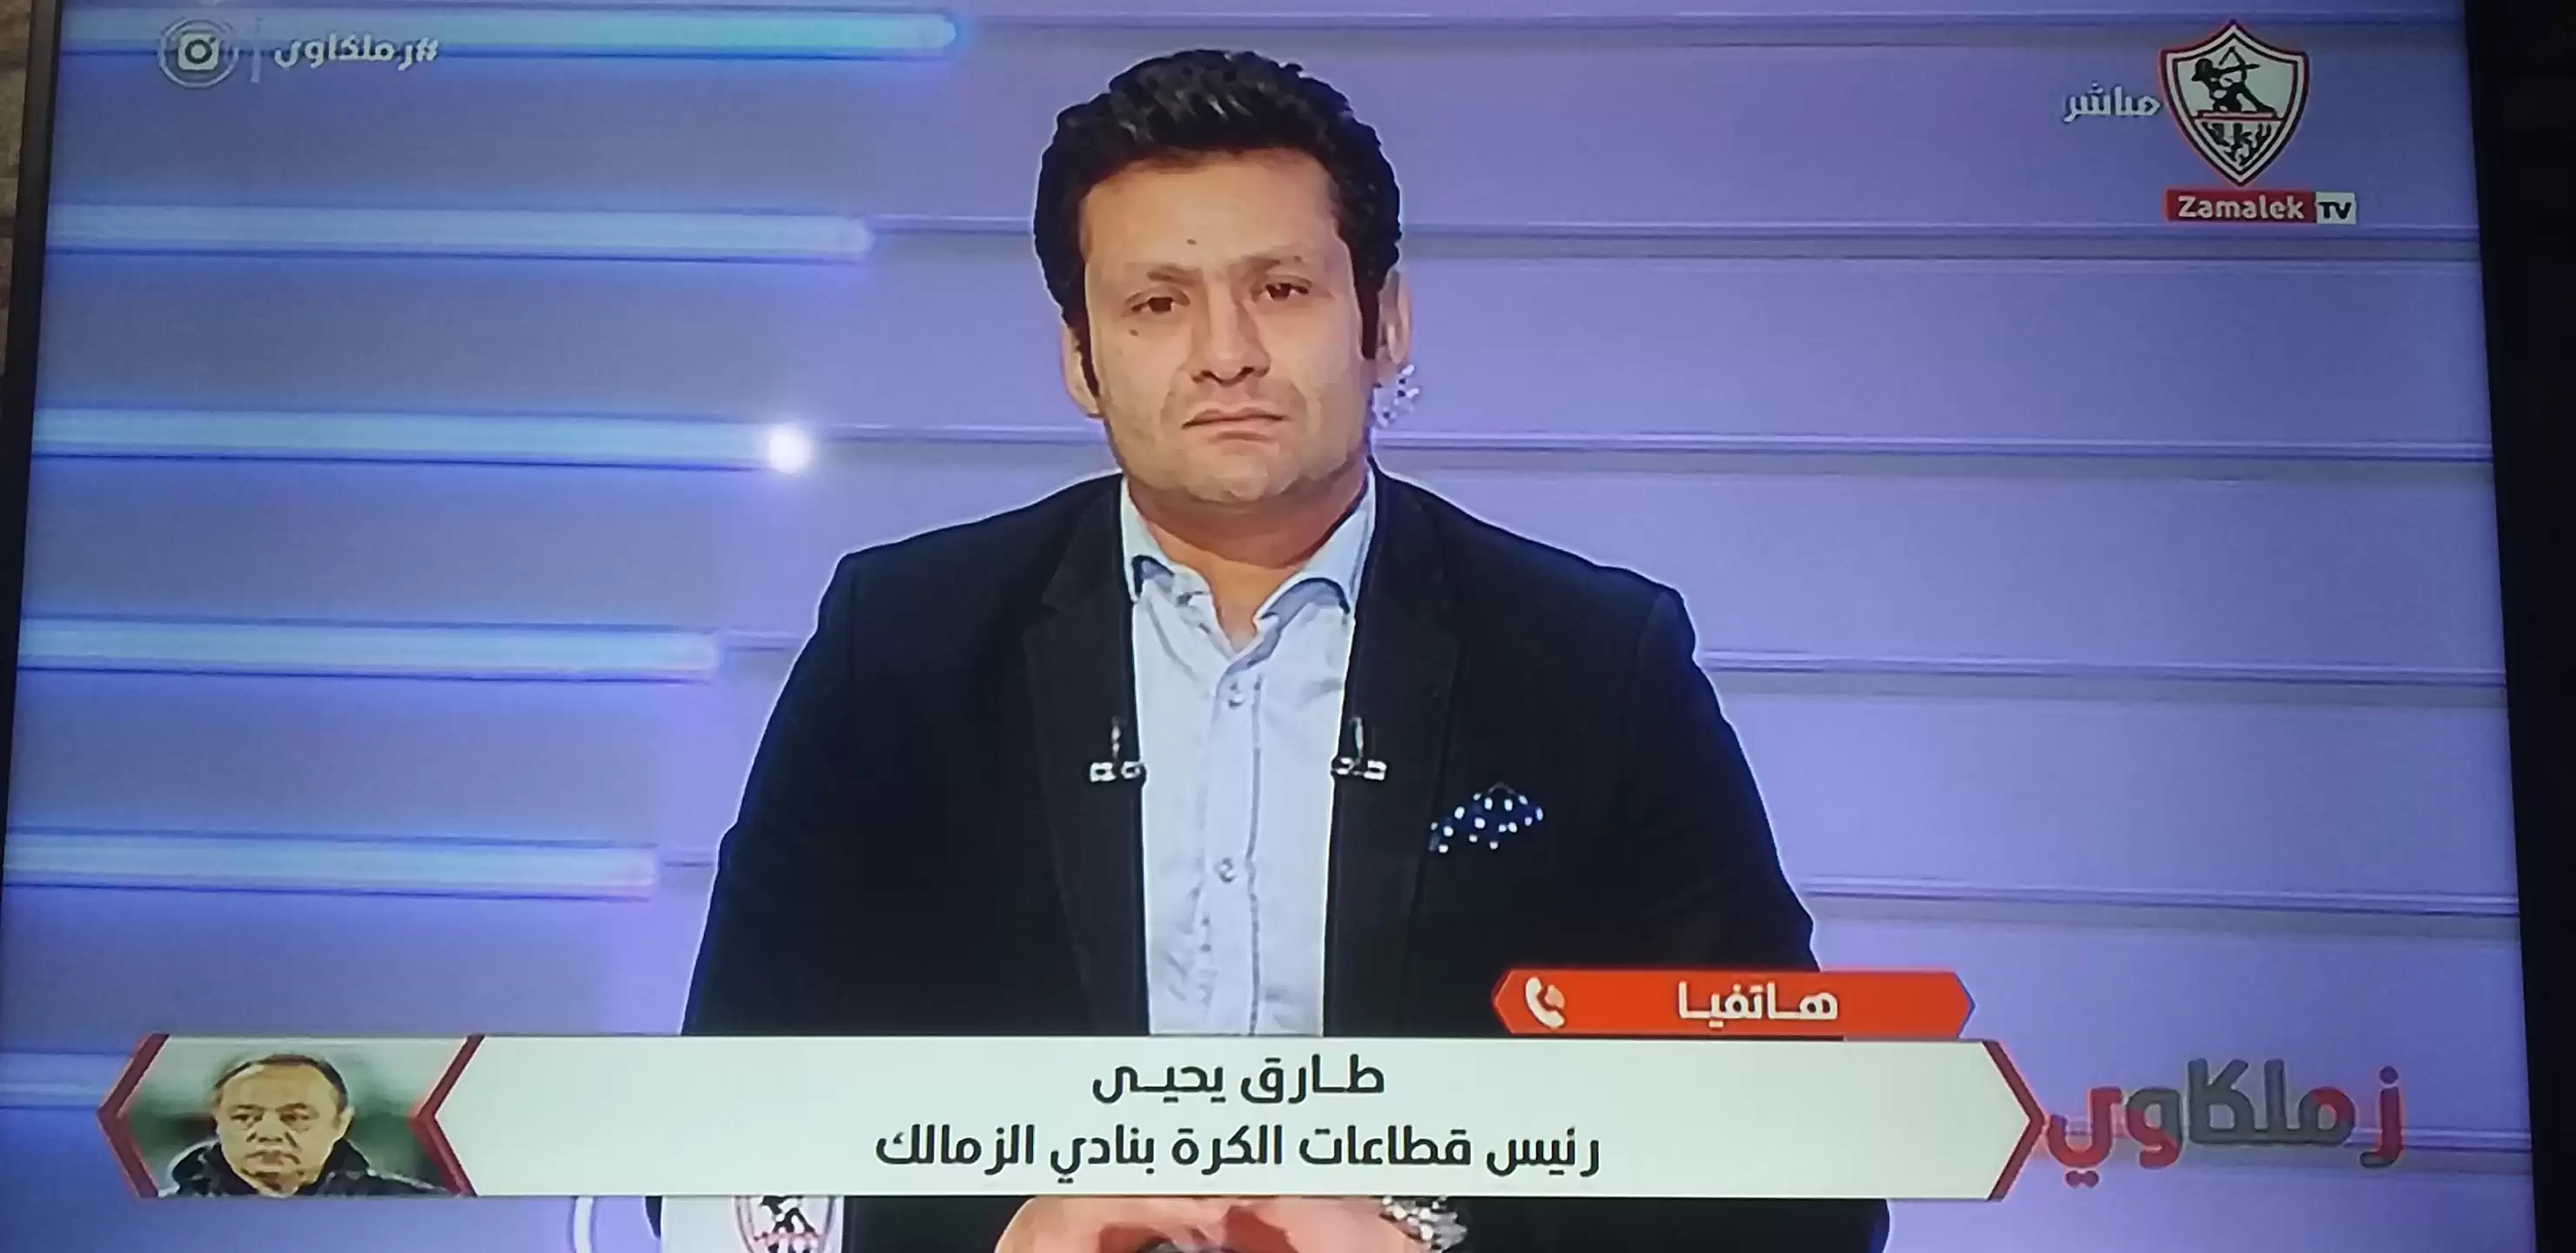 محمد ابو العلا هاحول اللائحة الى طيارة ورق بعد مهزلة الشباب و وبدر حامد لن ن